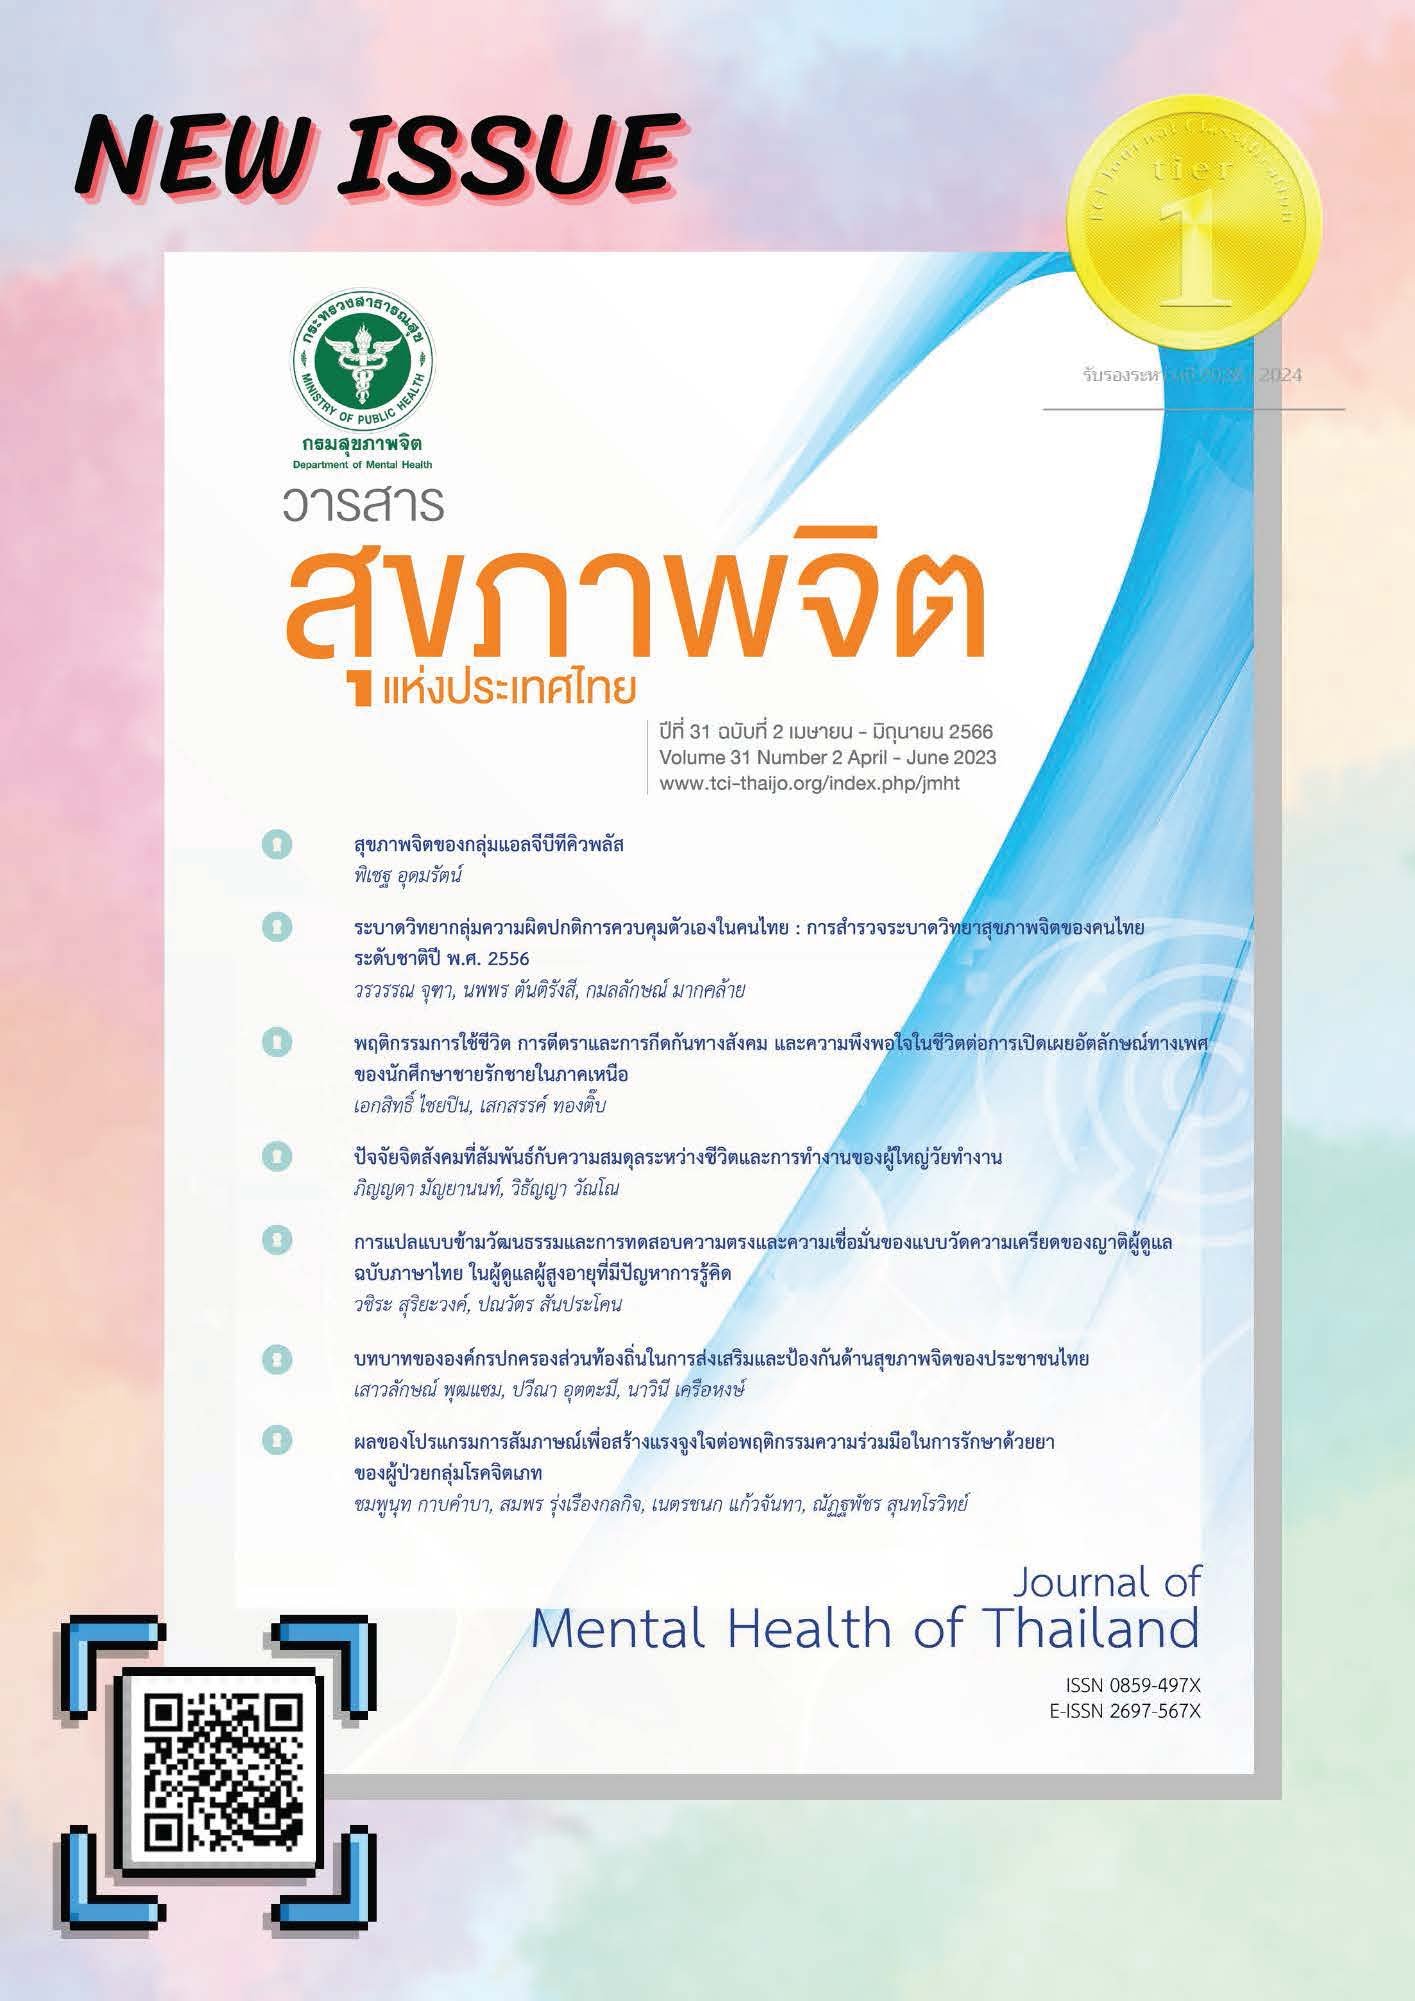 ประชาสัมพันธ์เชิญชวนตีพิมพ์เผยแพร่ผลงานวิจัยในวารสารสุขภาพจิตแห่งประเทศไทย